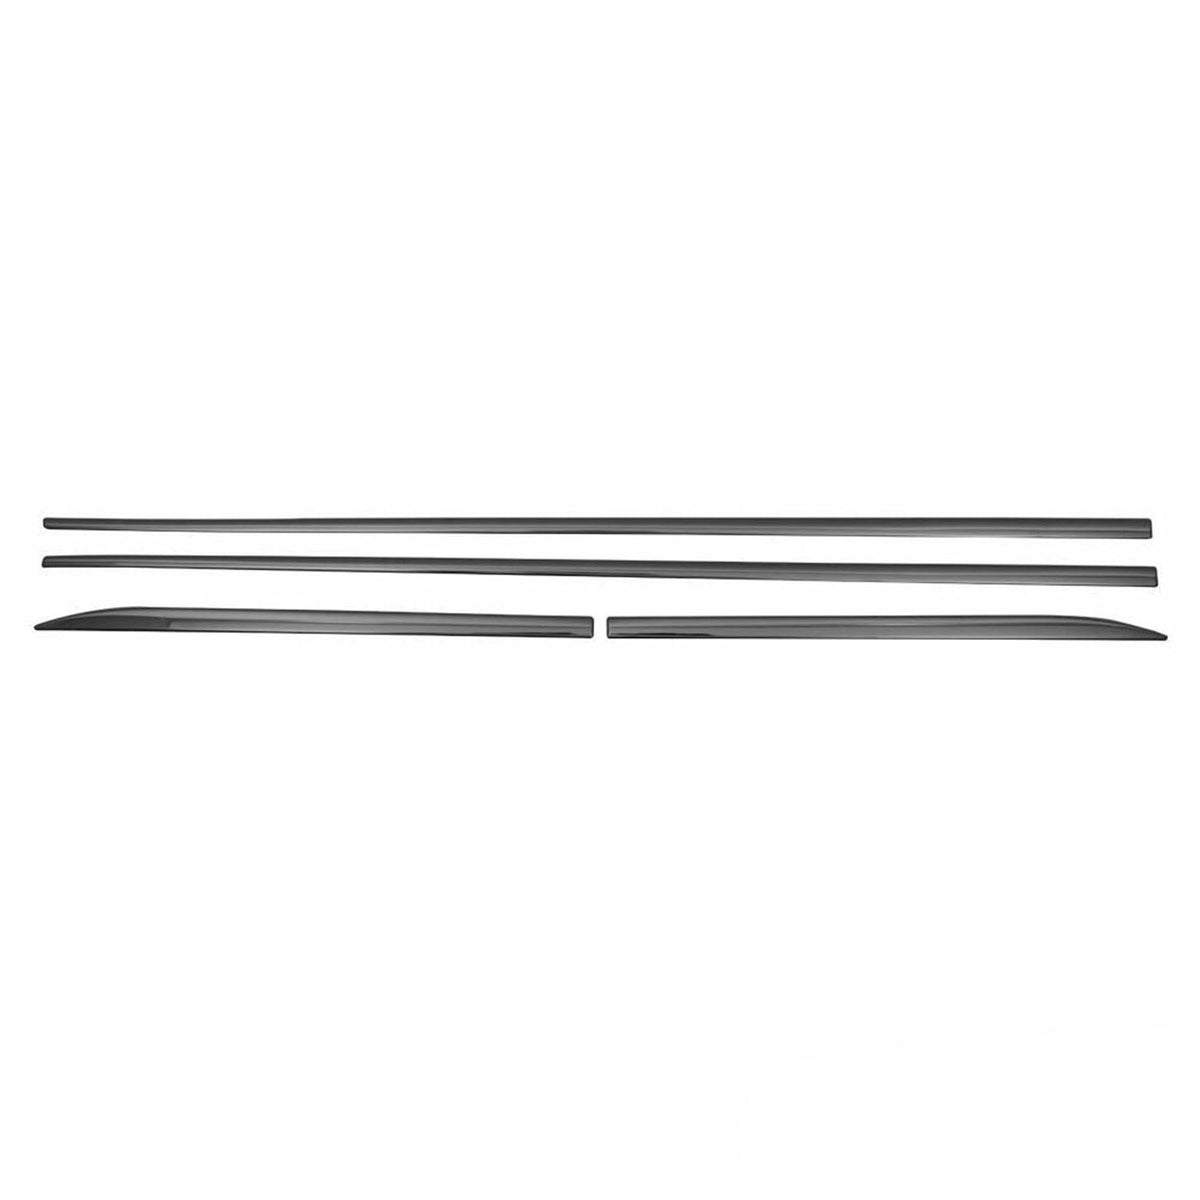 Seitentürleiste Türschutzleiste für BMW X3 F25 2010-2017 Chrom Stahl Dunkel 4x